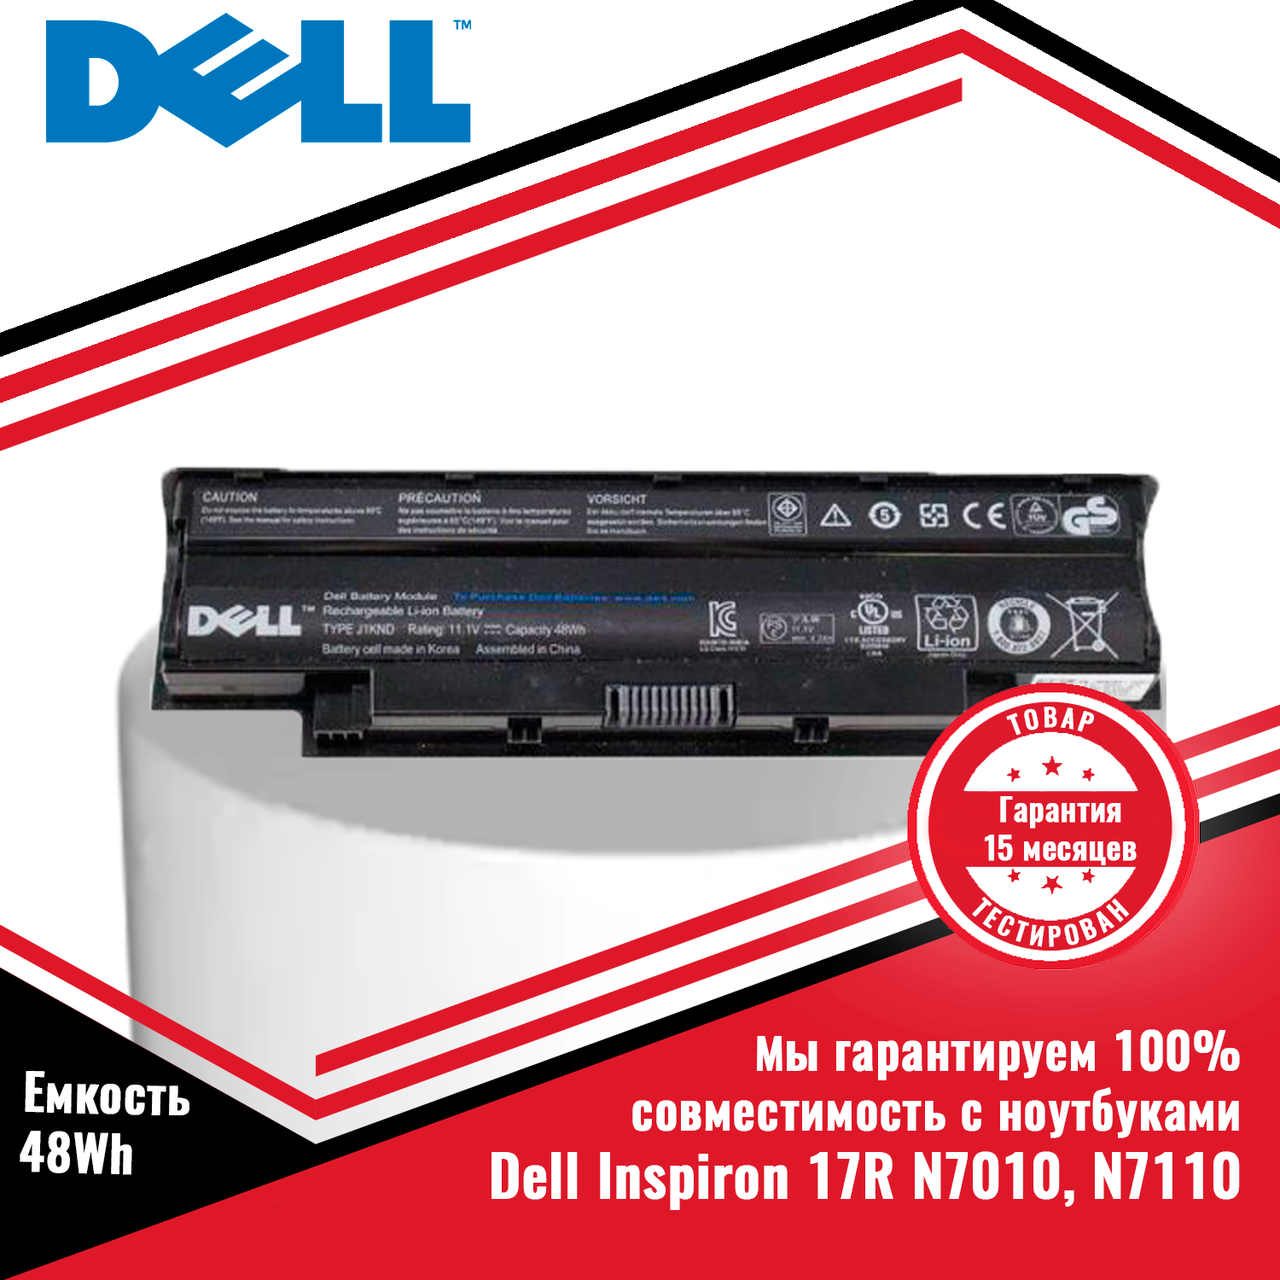 Оригинальный аккумулятор (батарея) для ноутбуков Dell Inspiron 17R серий: 17R N7010, N7110 (J1KND) 11.1V 48Wh